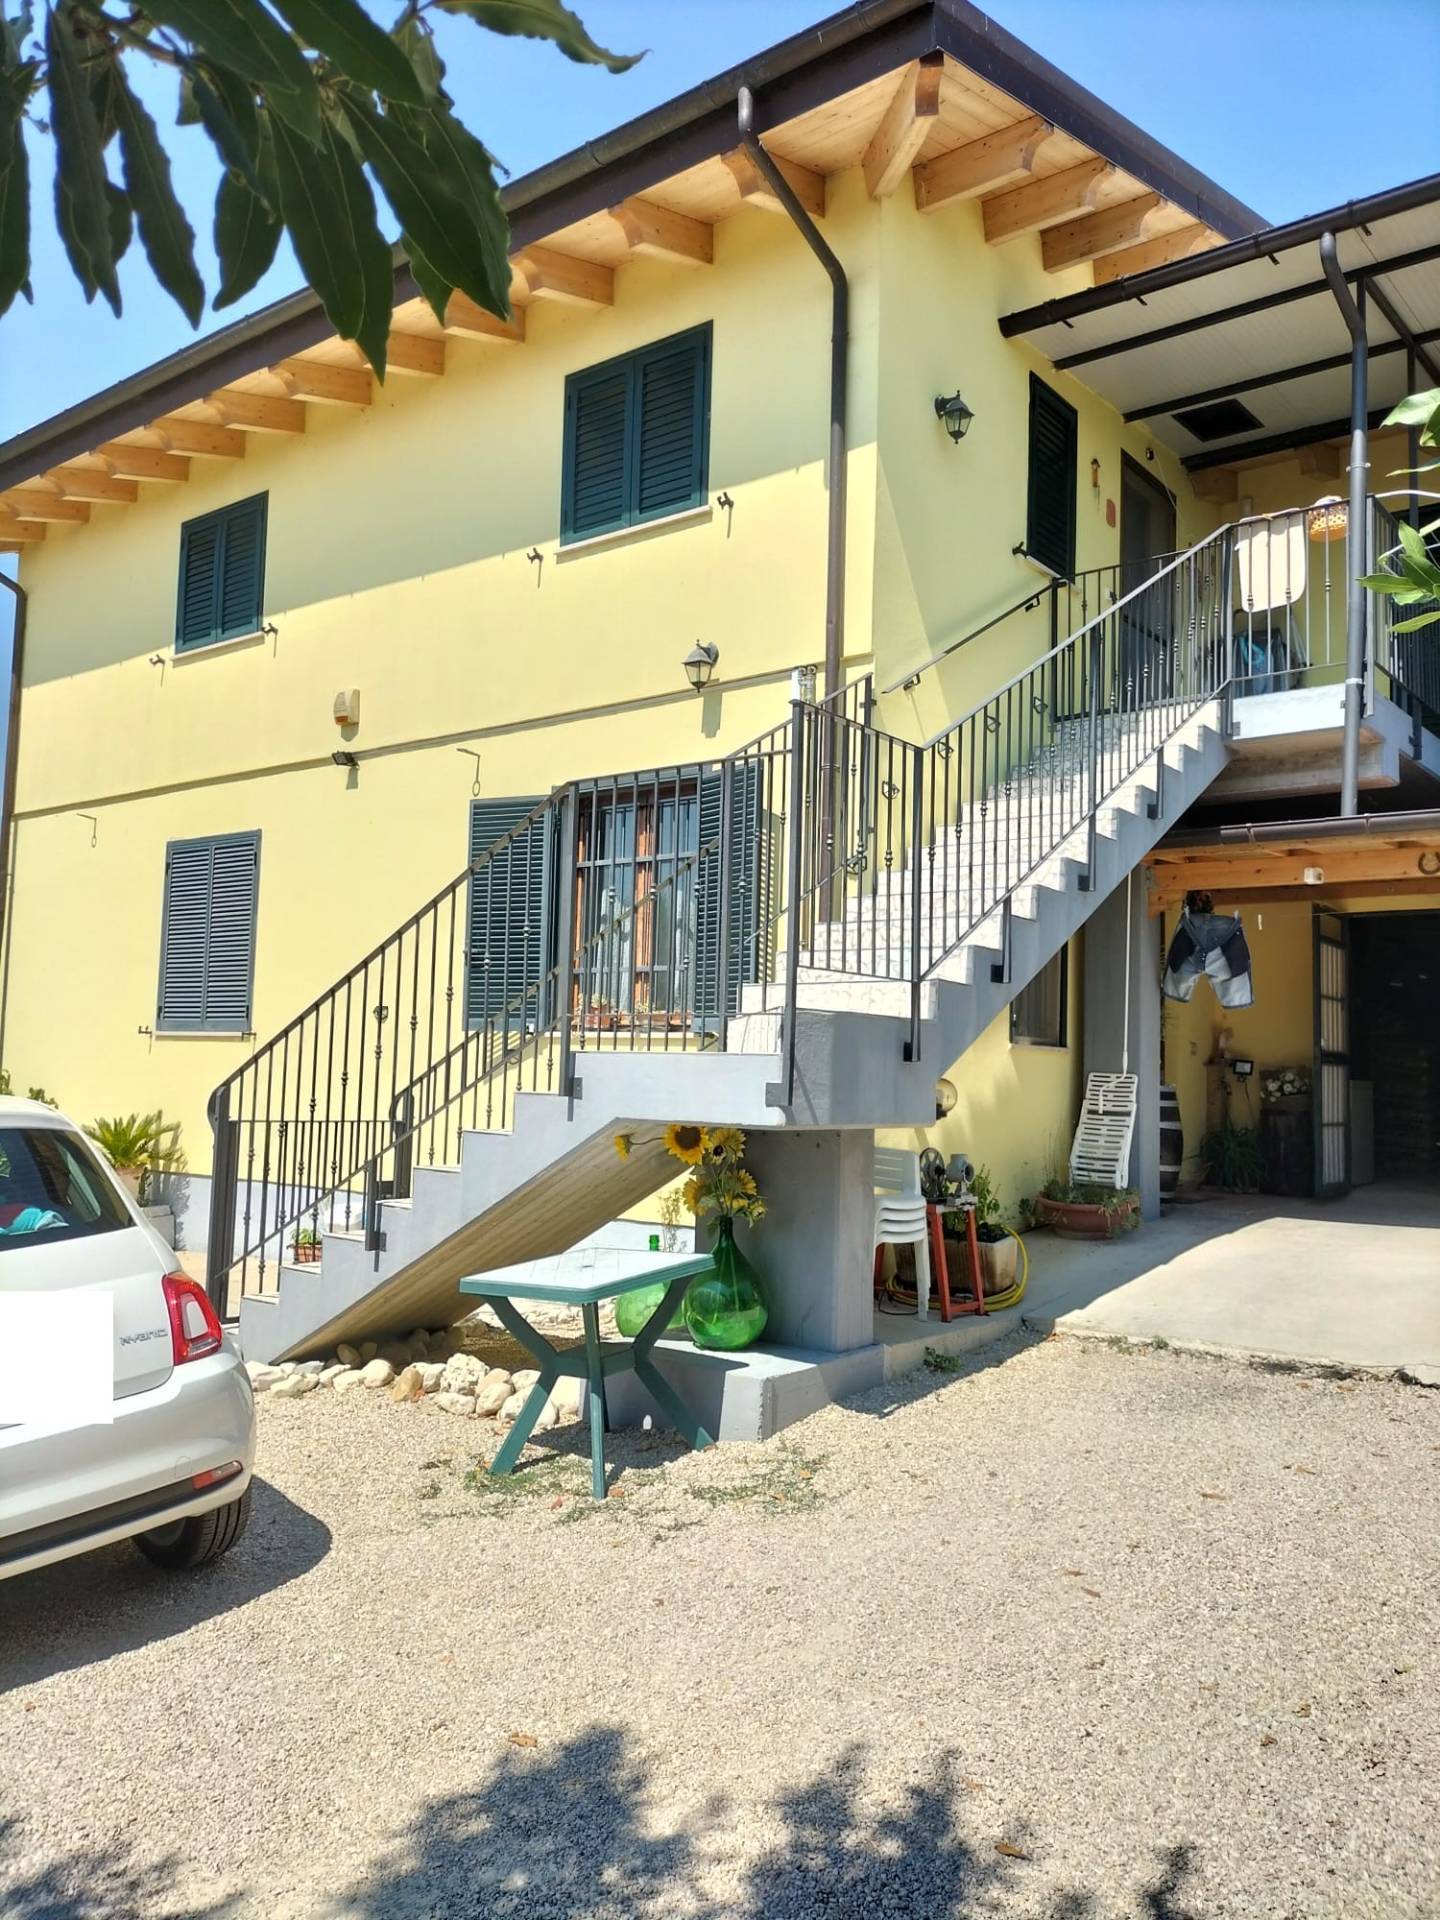 Appartamento in vendita a Mosciano Sant'Angelo, 4 locali, prezzo € 168.000 | PortaleAgenzieImmobiliari.it